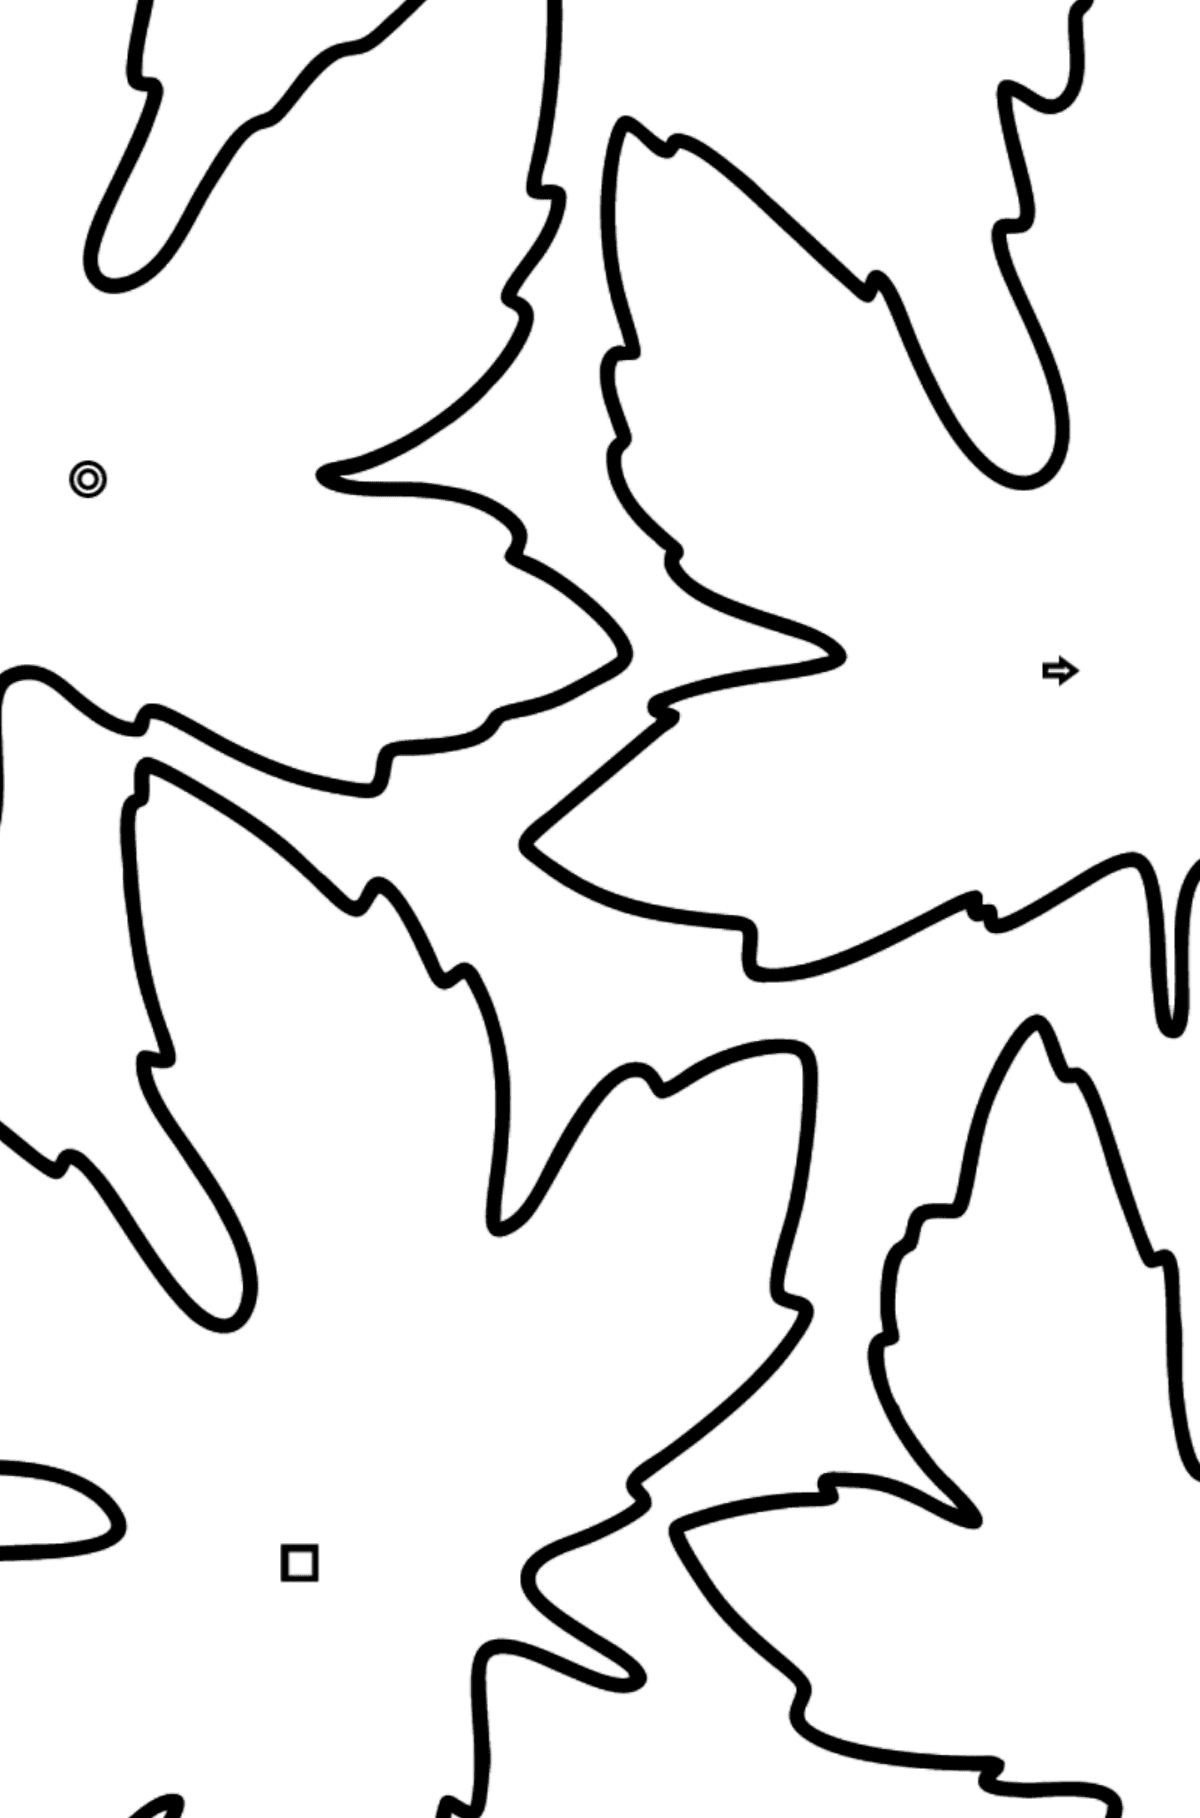 Desenho para colorir de Maple Leaves - Colorir por Formas Geométricas para Crianças